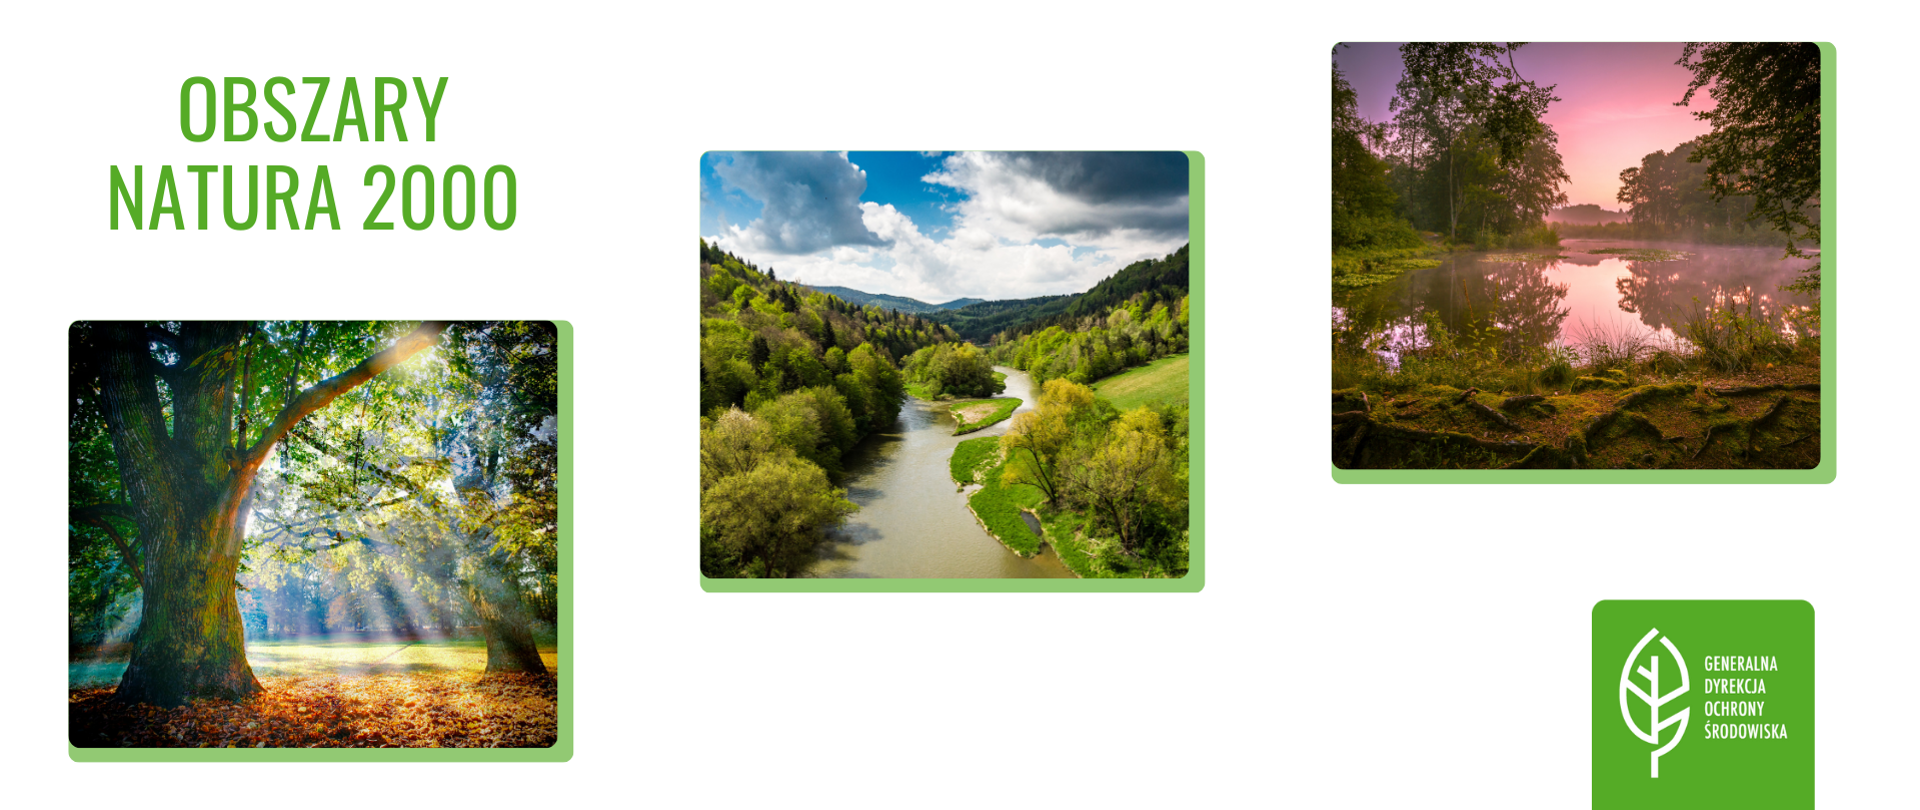 Na białym tle umieszczone w kształcie kwadratów krajobrazy: rzeka, jezioro, las. W sumie 3 kolorowe krajobrazy. W lewym górnym rogu znajduje się napis (zielona czcionka): Obszary Natura 2000. W prawym dolnym rogu na zielonym tle znajduje się logo (biały listek) Generalnej Dyrekcji Ochrony Środowiska.